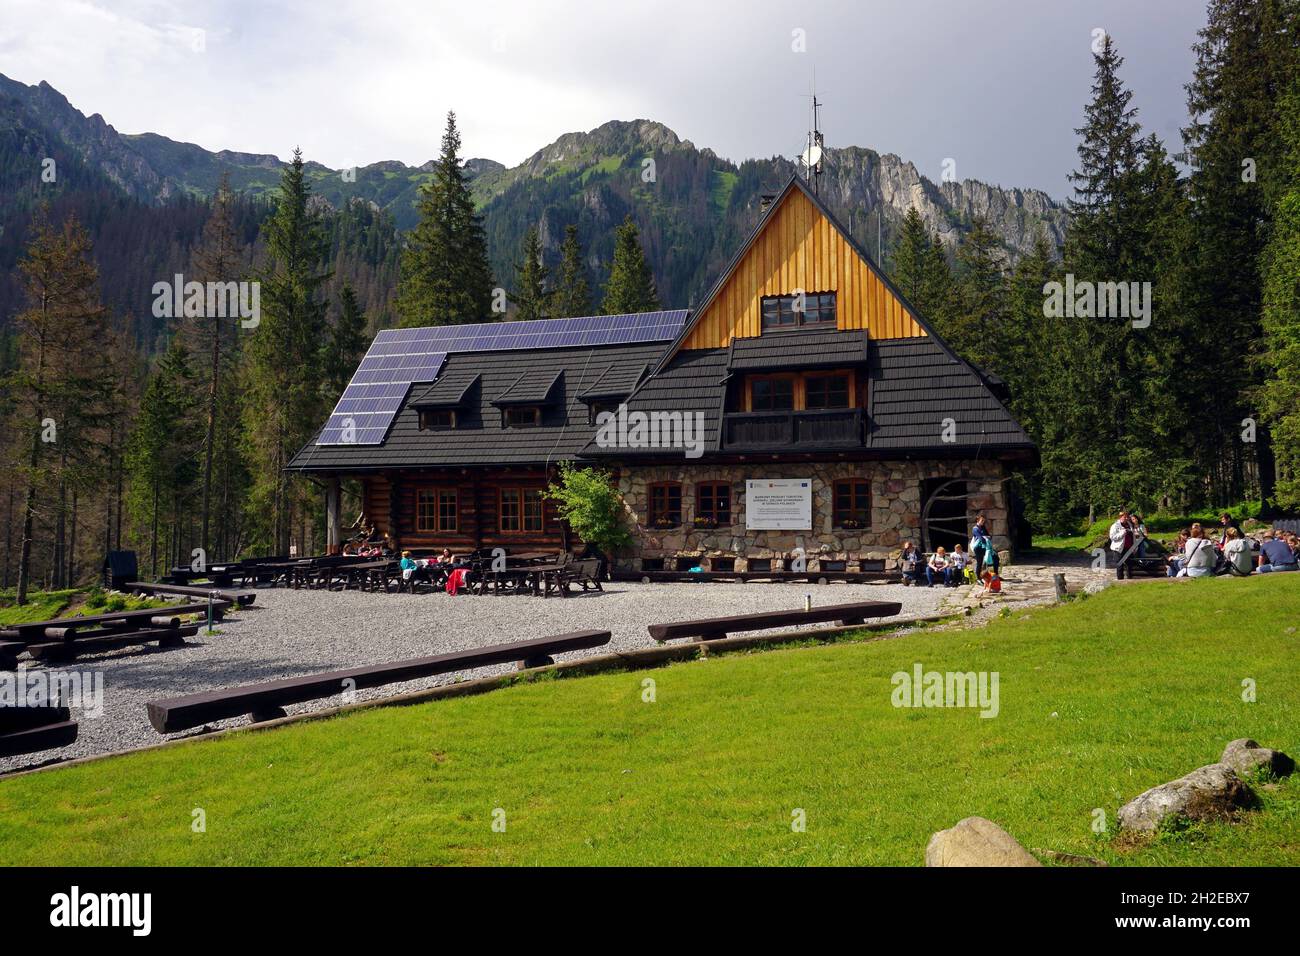 Mountain Shelter in Koscieliska Valley, Tatra Mountains, Poland. May 2018, Tatra National Park, Poland Stock Photo